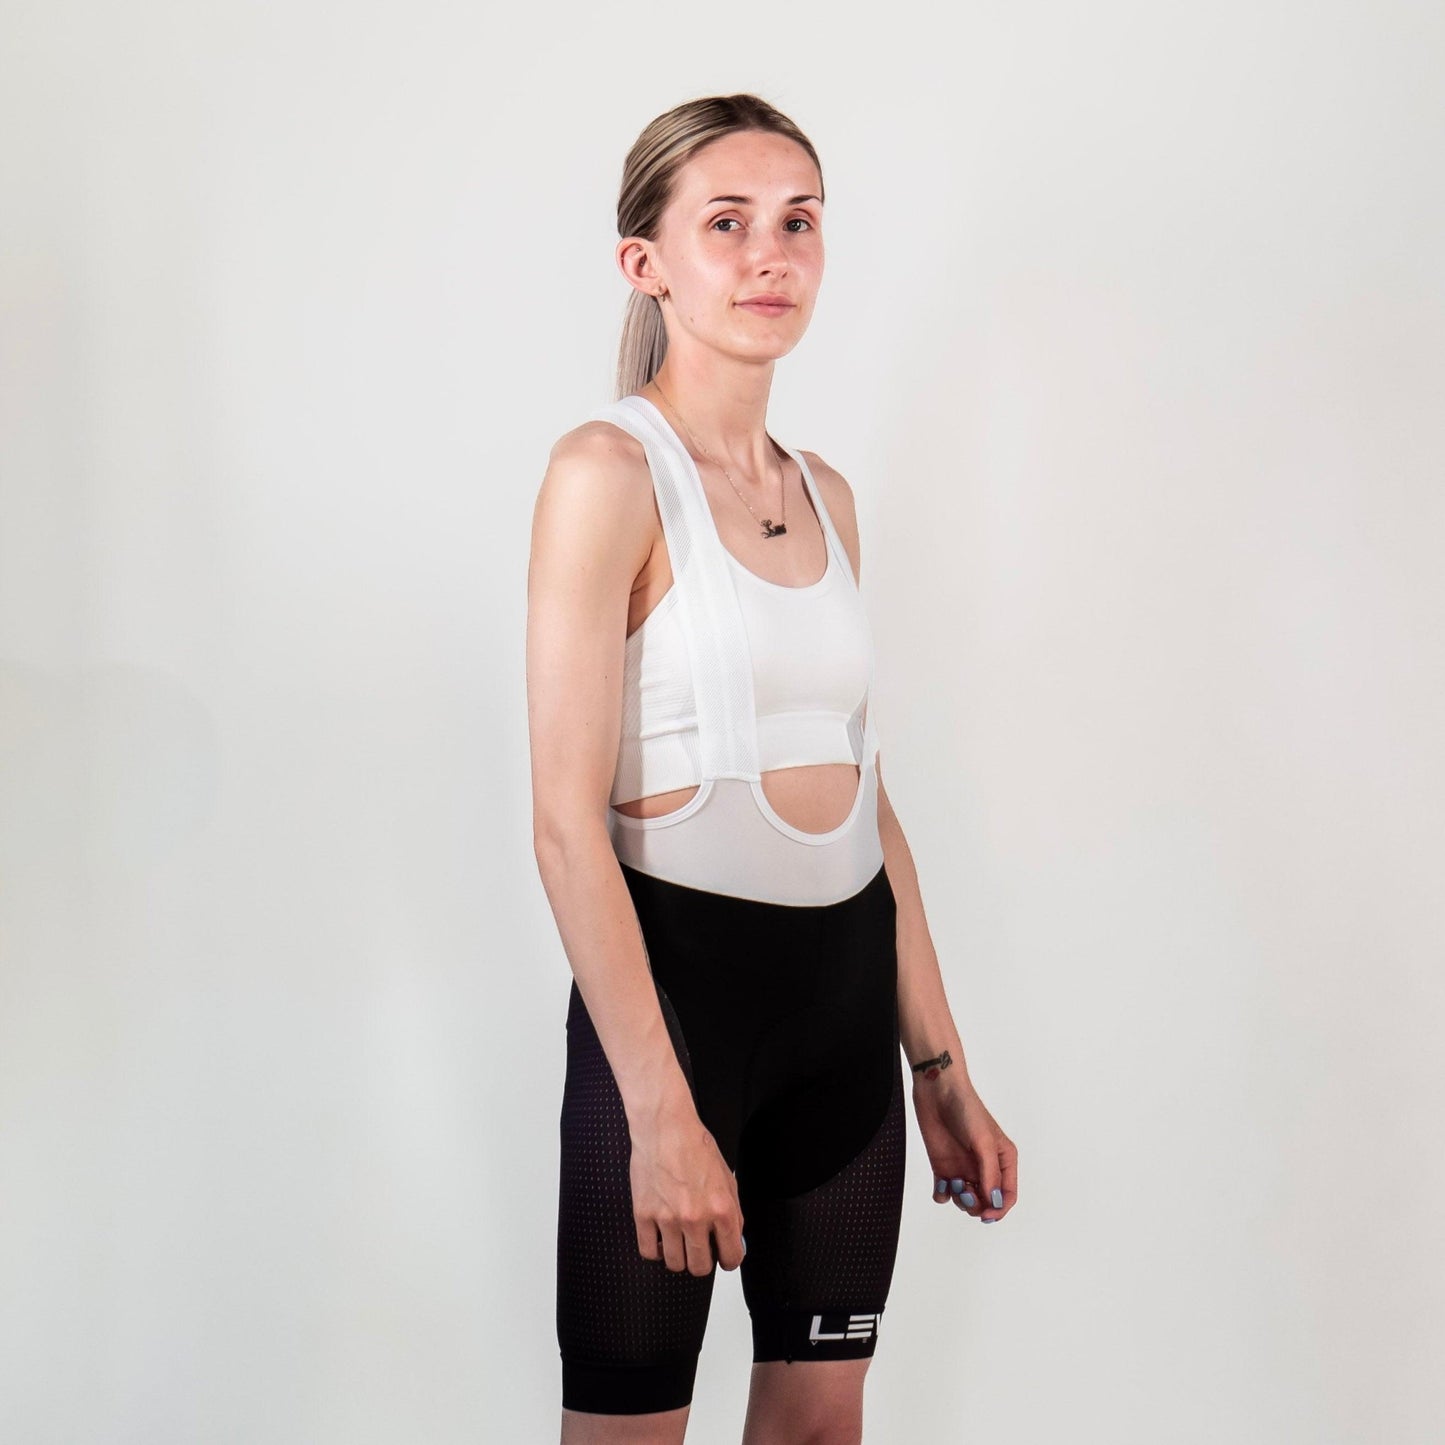 LEVEL Velo Women's Elite Indoor Cycling Shorts - LEVEL VELO